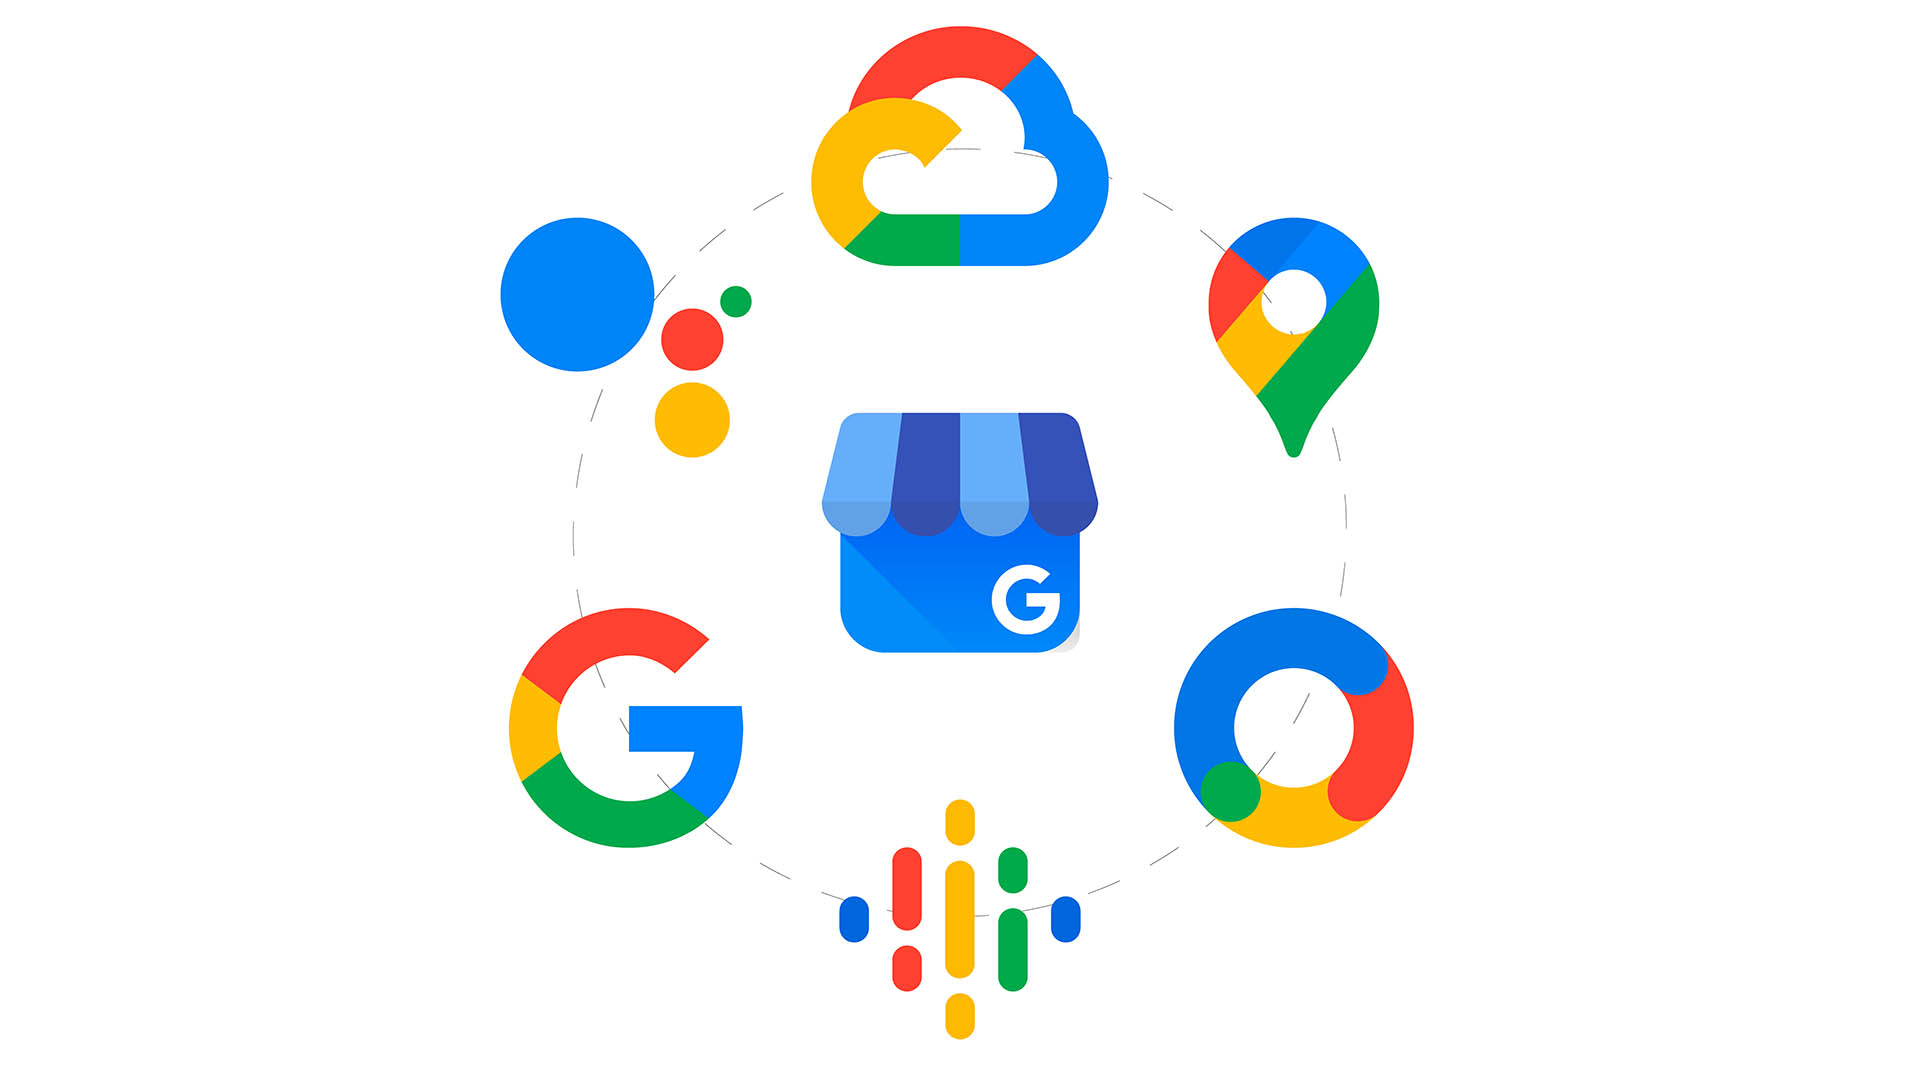 La scheda di Google My Business è un servizio gratuito che integra le funzionalità di ricerca e di mappe di Google, per rendere visibile e individuabile un business con facilità su Internet.